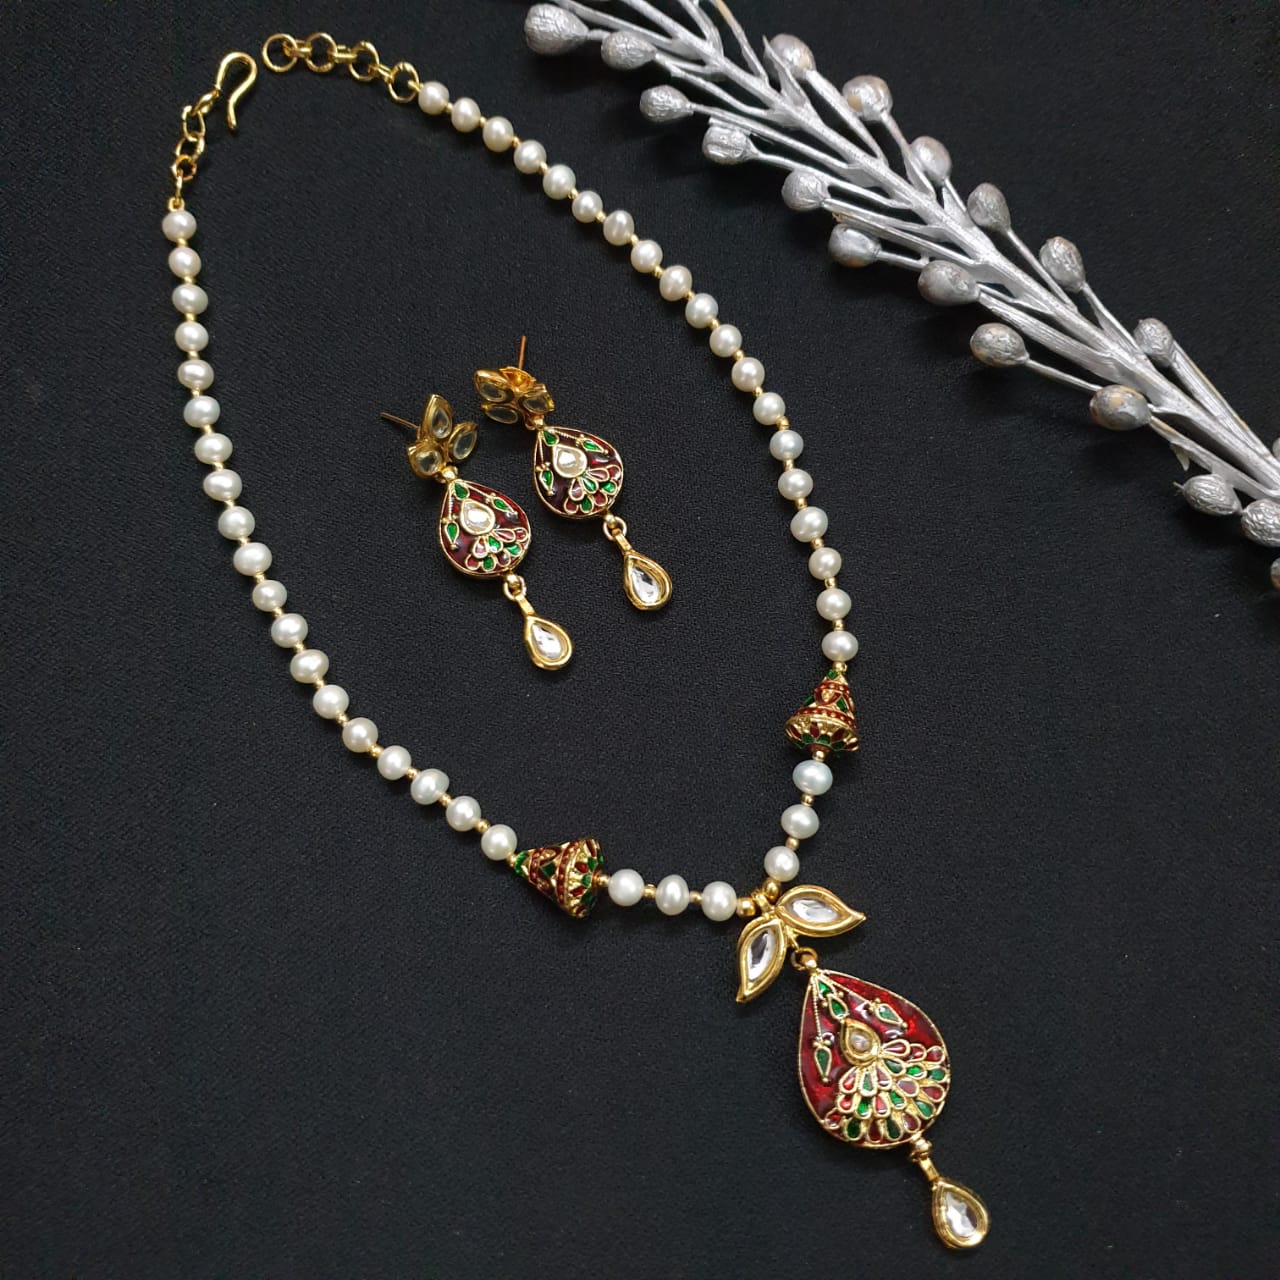 Kundan Meenakari Small Pendant Set With Earrings